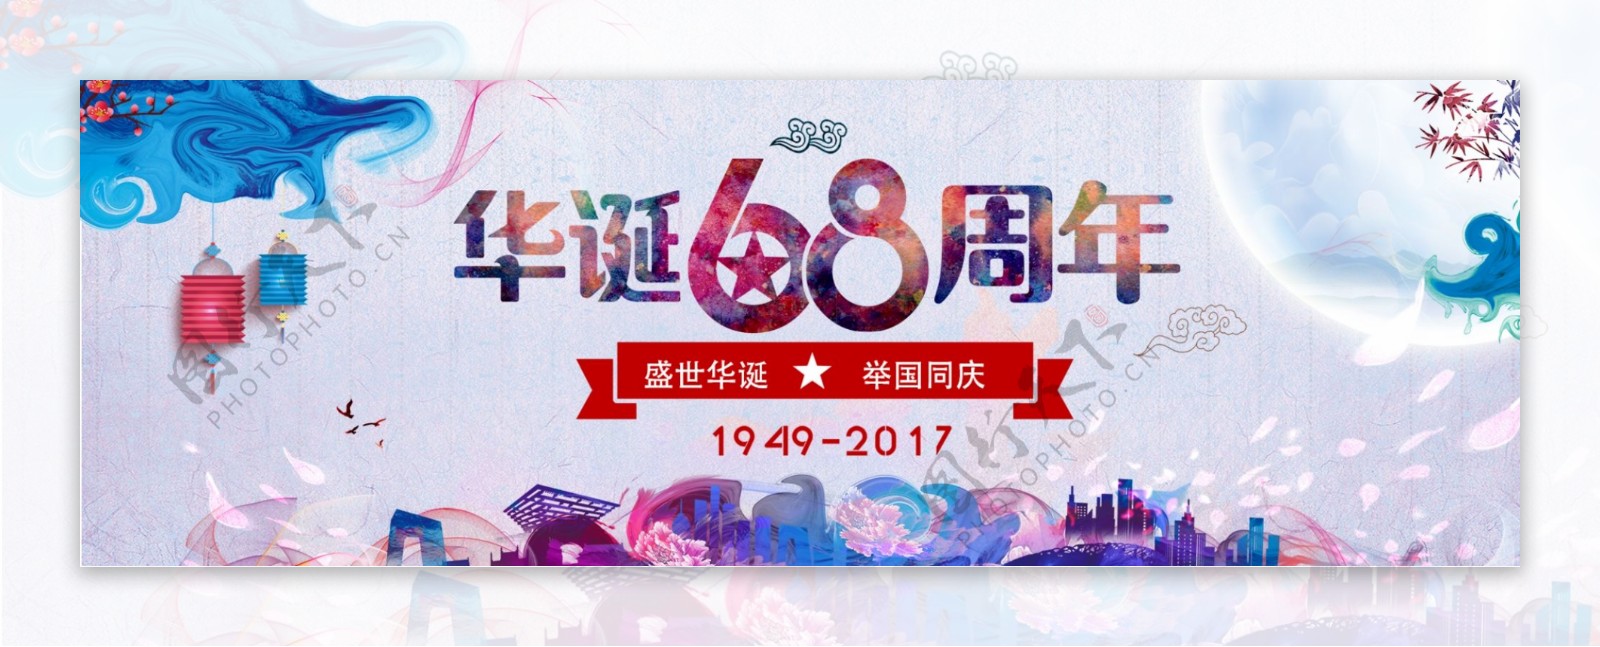 淘宝天猫电商国庆节水墨炫彩古典促销海报banner模板